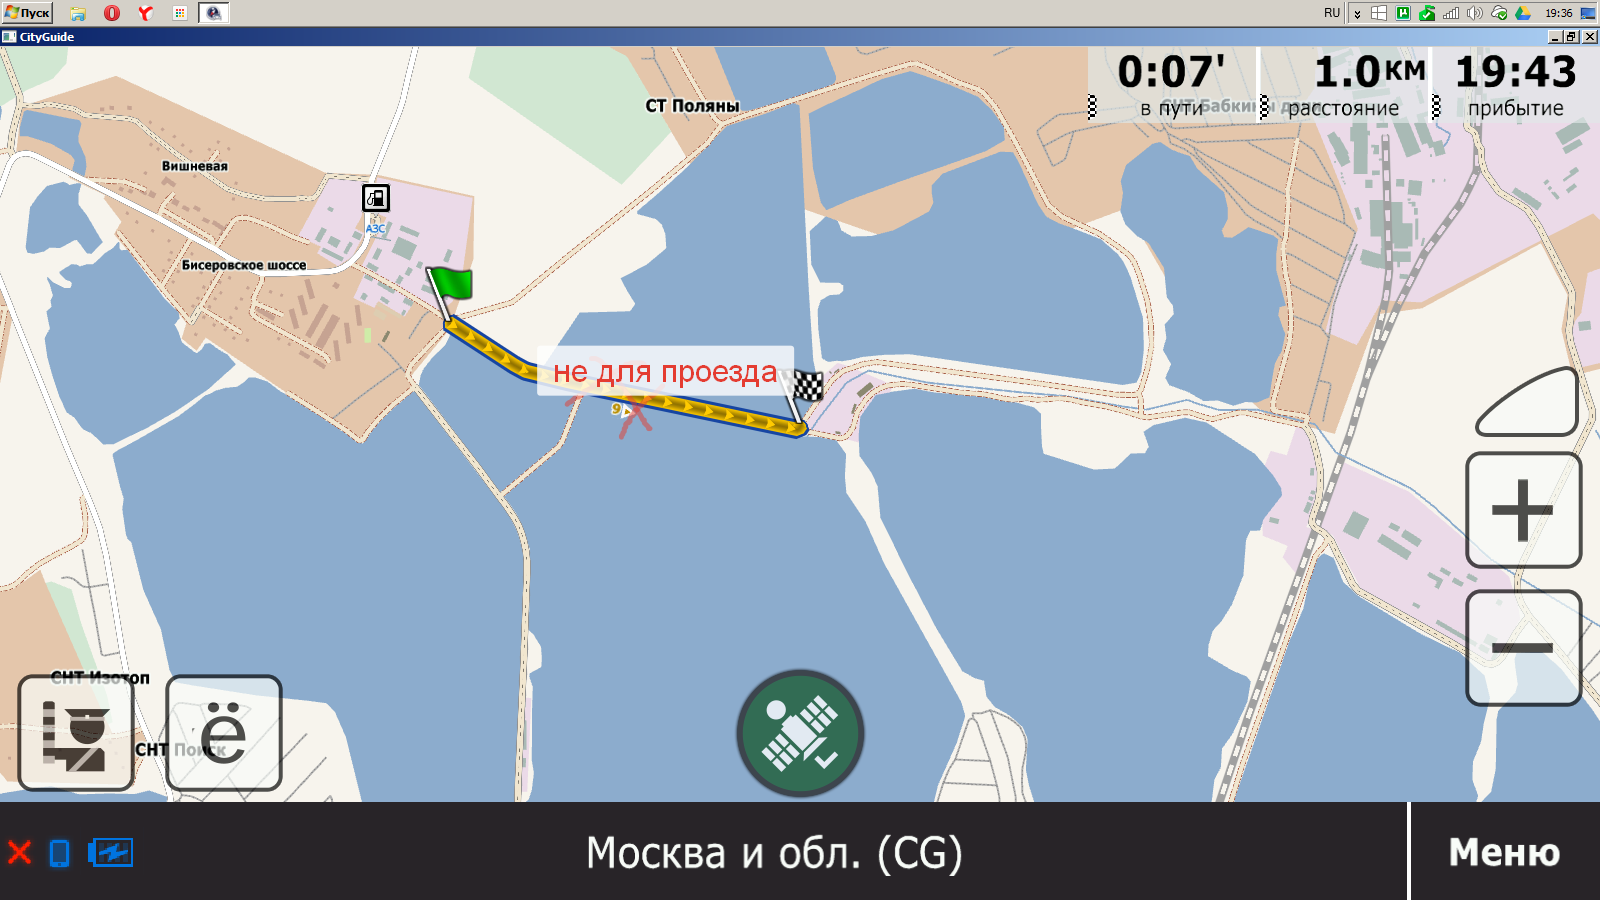 Бисерово озеро, московская область — рыбалка 2021, отдых, отзывы, фото, где находится, на карте, как доехать